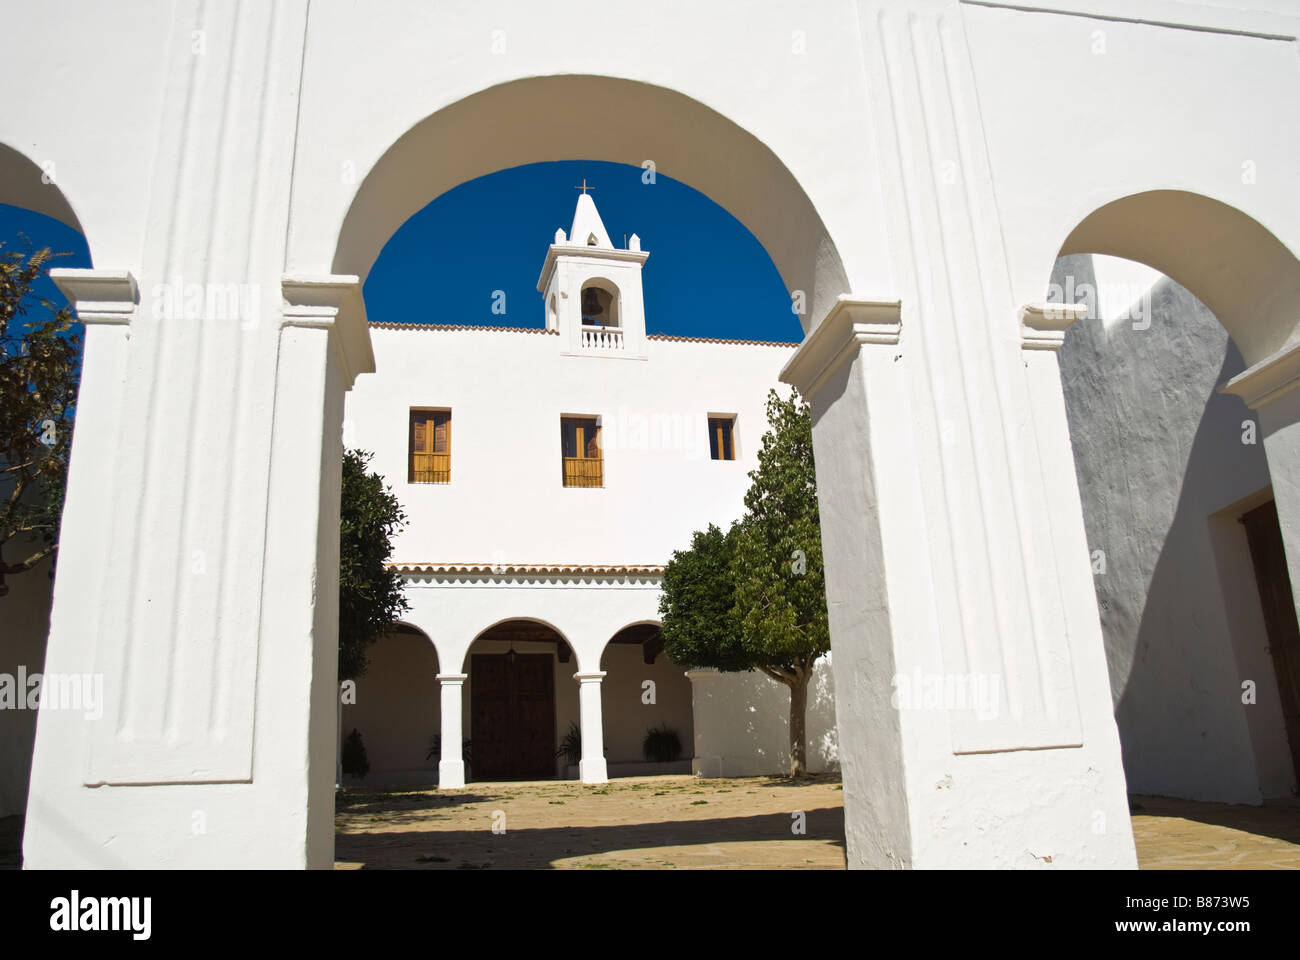 Façade and Courtyard of the Church of Sant Miquel de Balansat, Ibiza, Spain Stock Photo